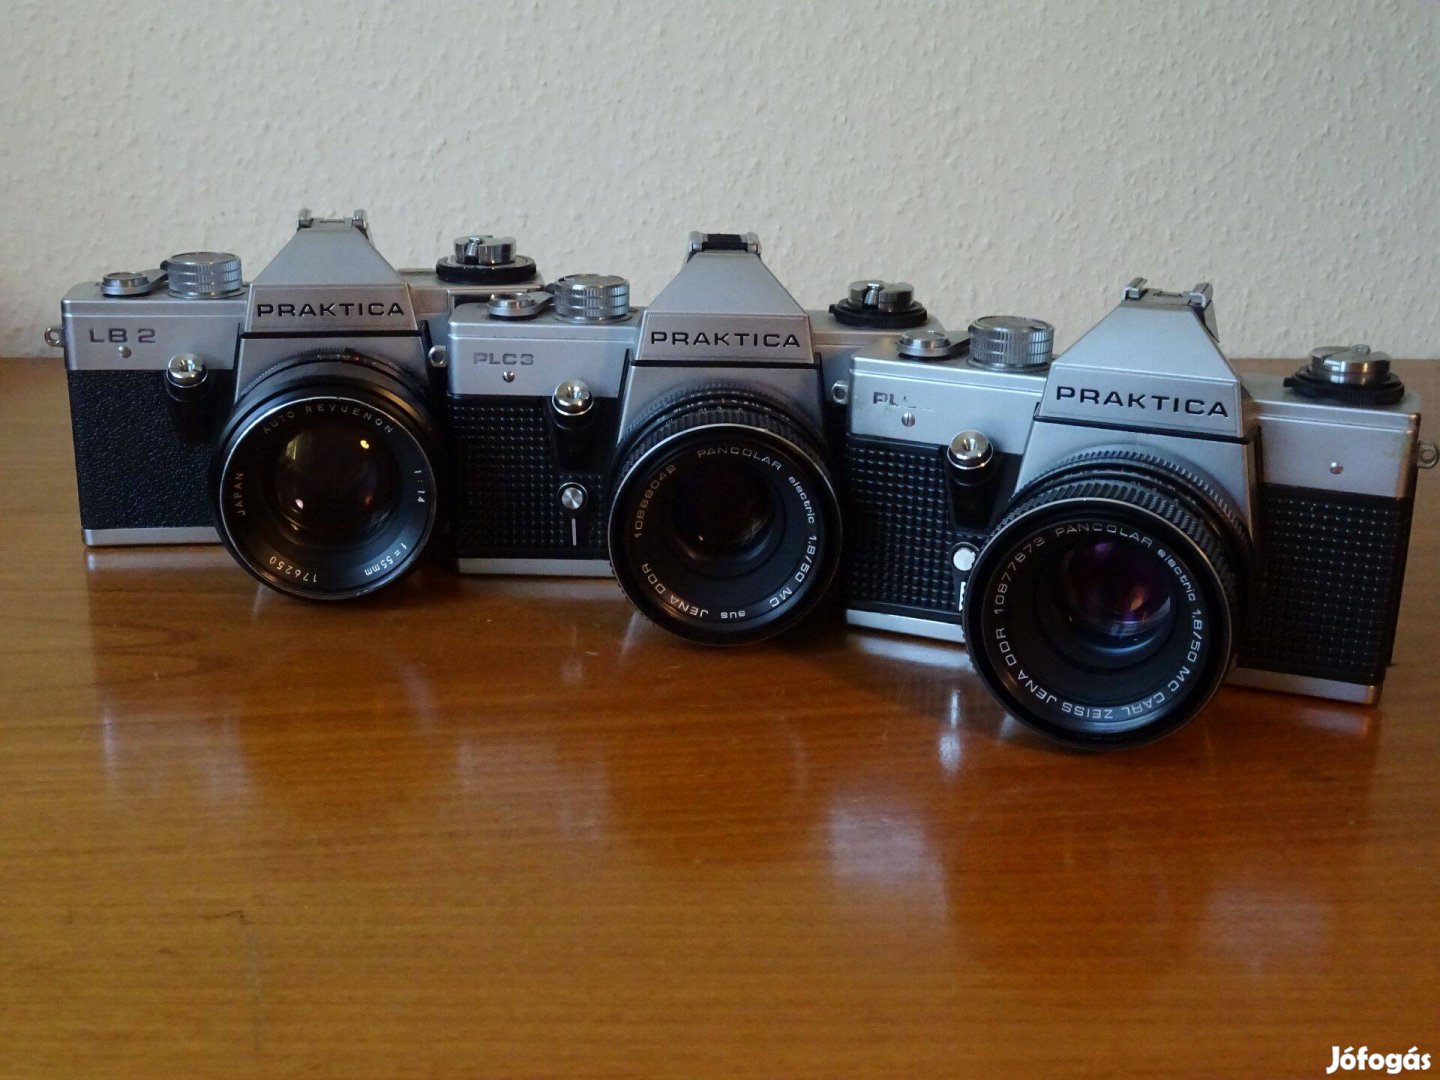 6 db fényképezőgép + objektív Canon Chinon Olympus Praktica stb